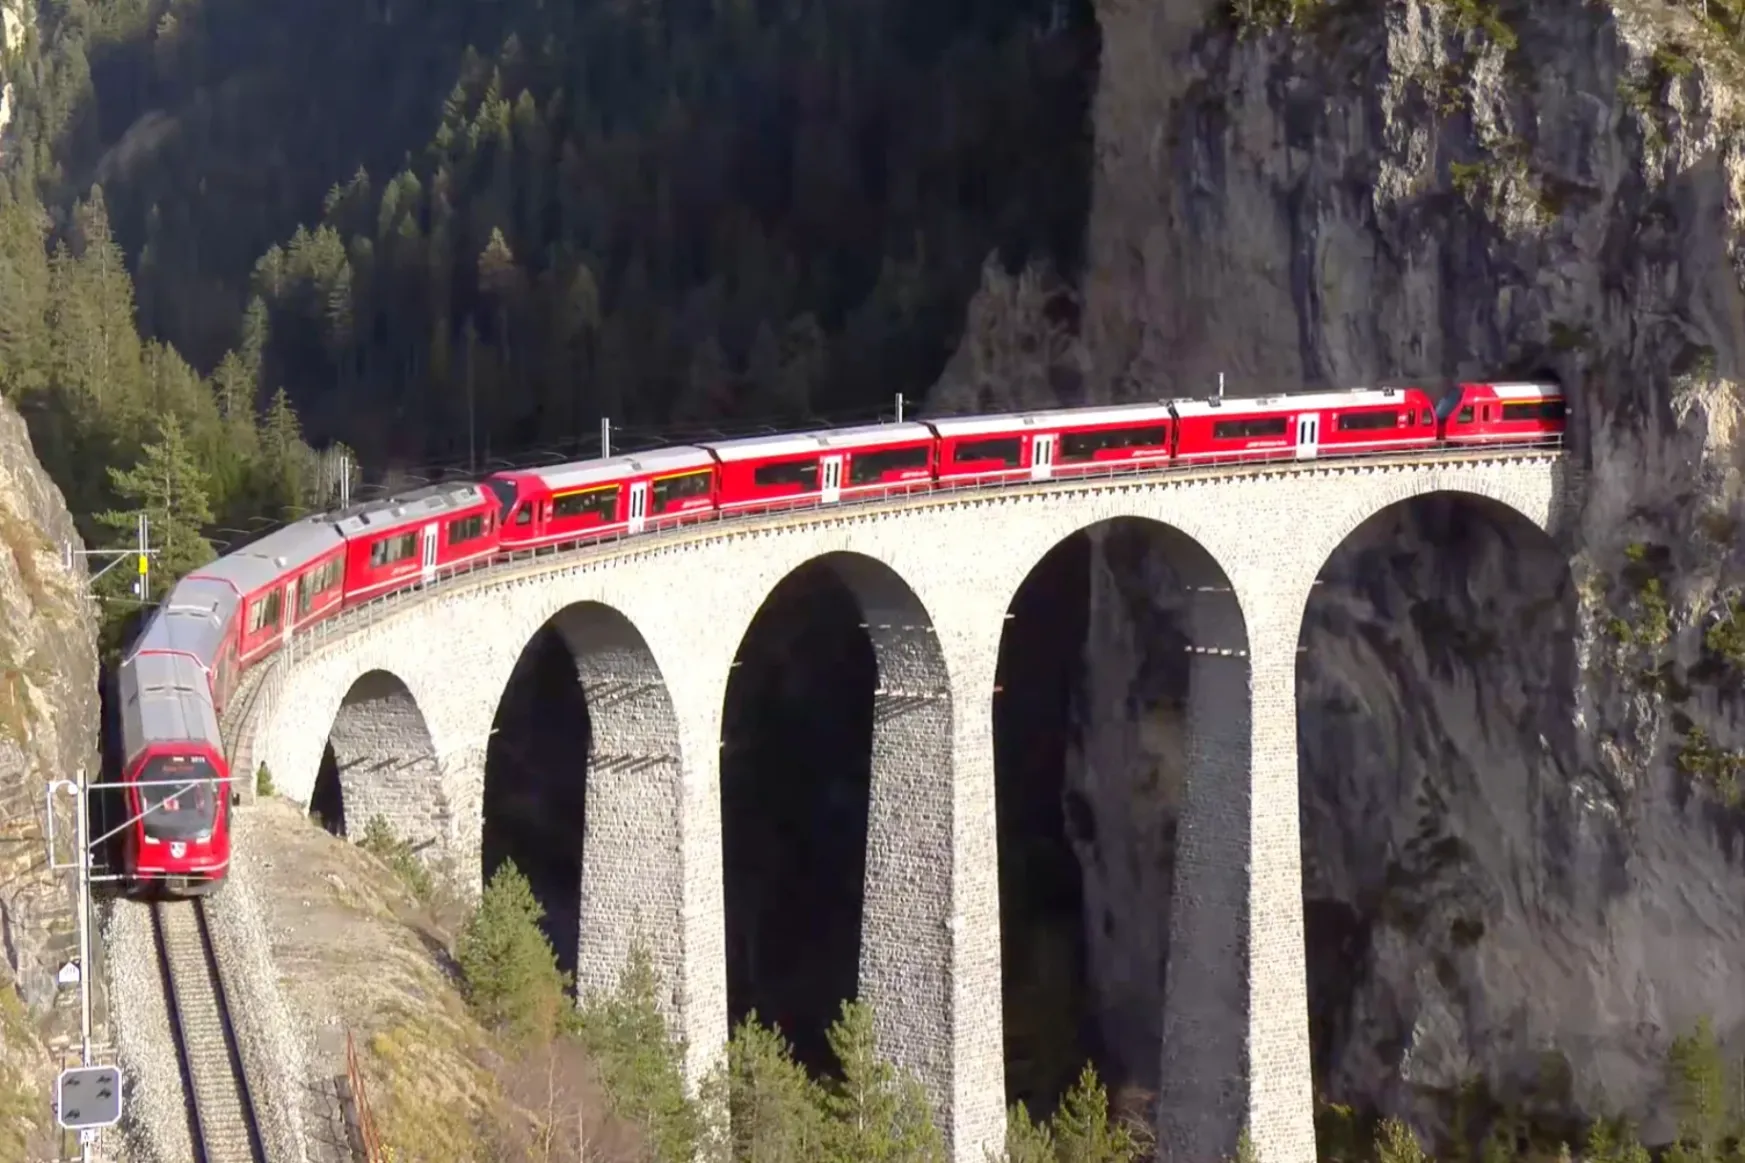 Világrekord: két kilométer hosszú vonatszörny zakatolt át Svájcon